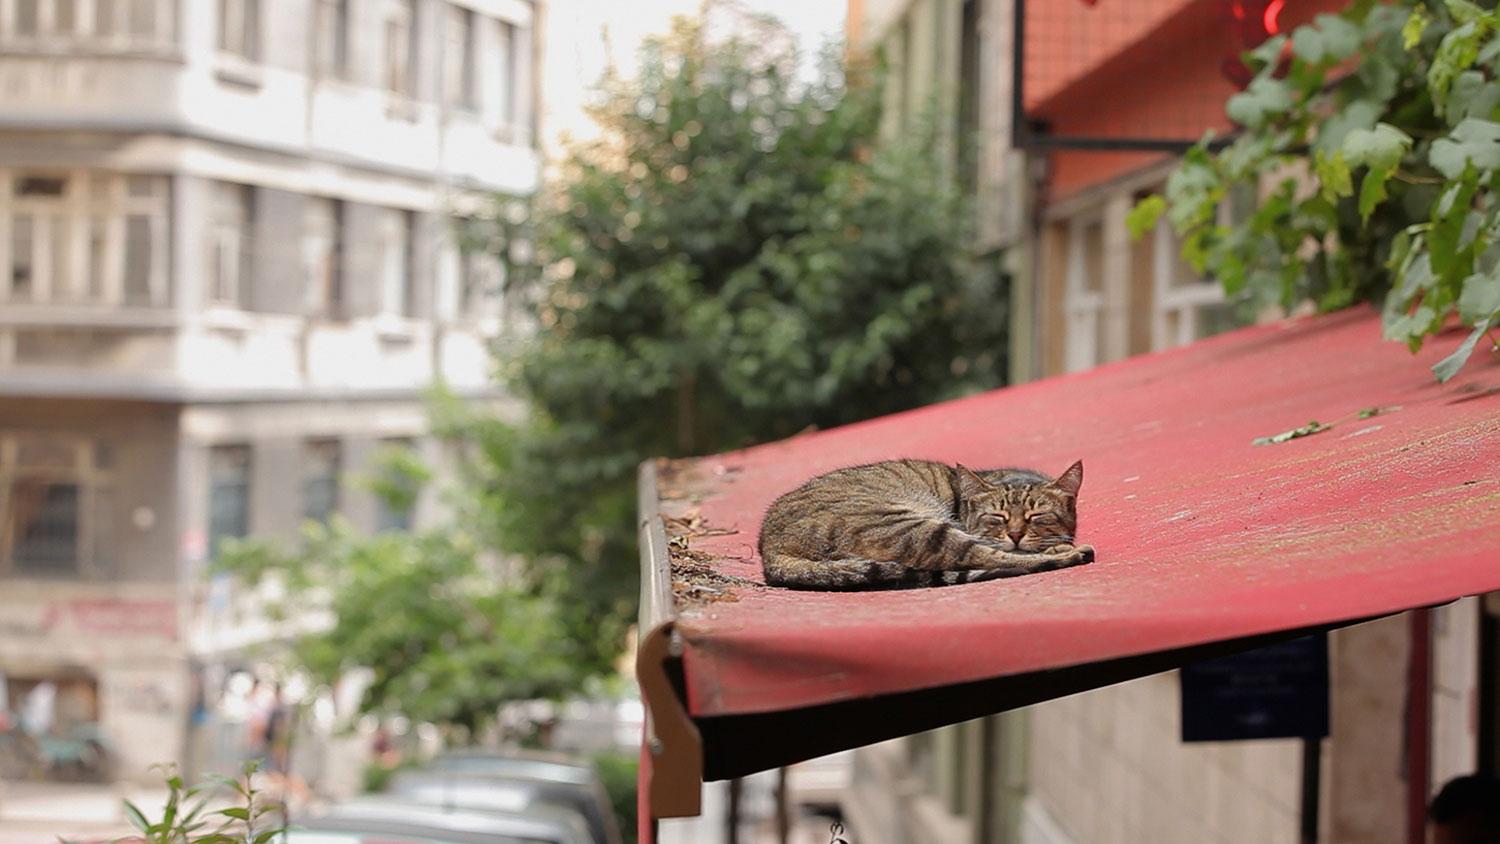 Katt på hett tygtak. En av alla gatukatterna i Istanbul, ur bioaktuella dokumentären ”Kedi”.